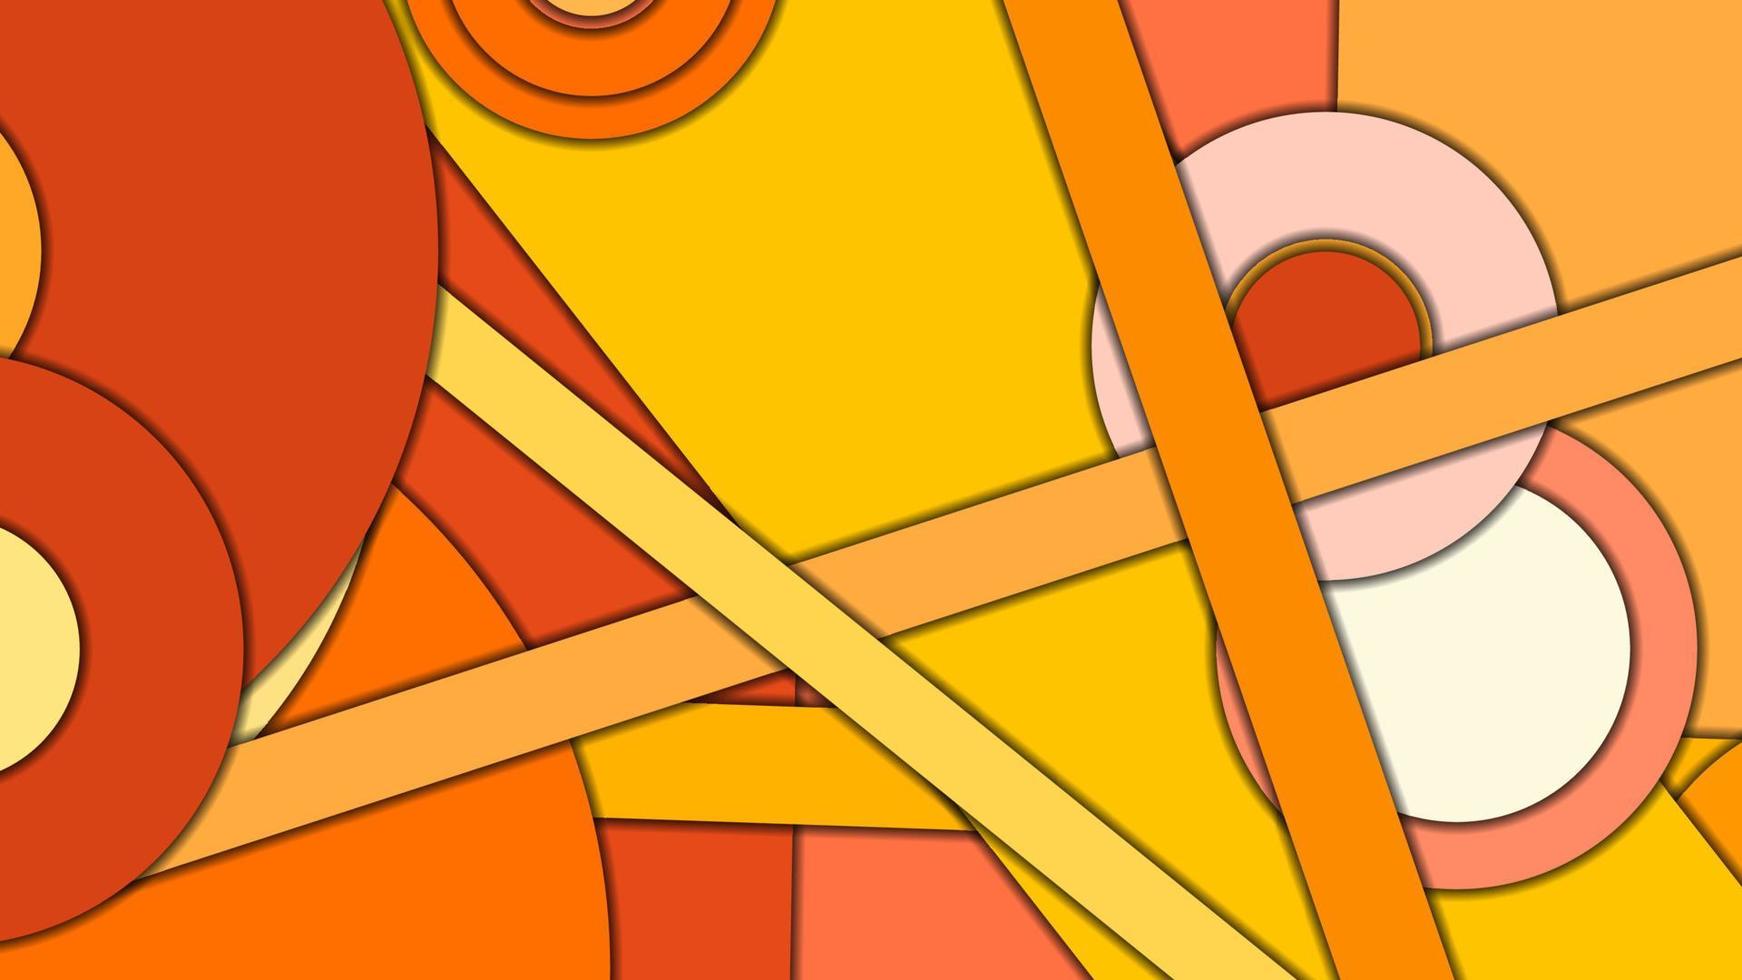 sfondo vettoriale geometrico astratto in stile design materiale con una tavolozza armonizzata limitata, con cerchi concentrici e rettangoli ruotati con ombre, imitando la carta tagliata.